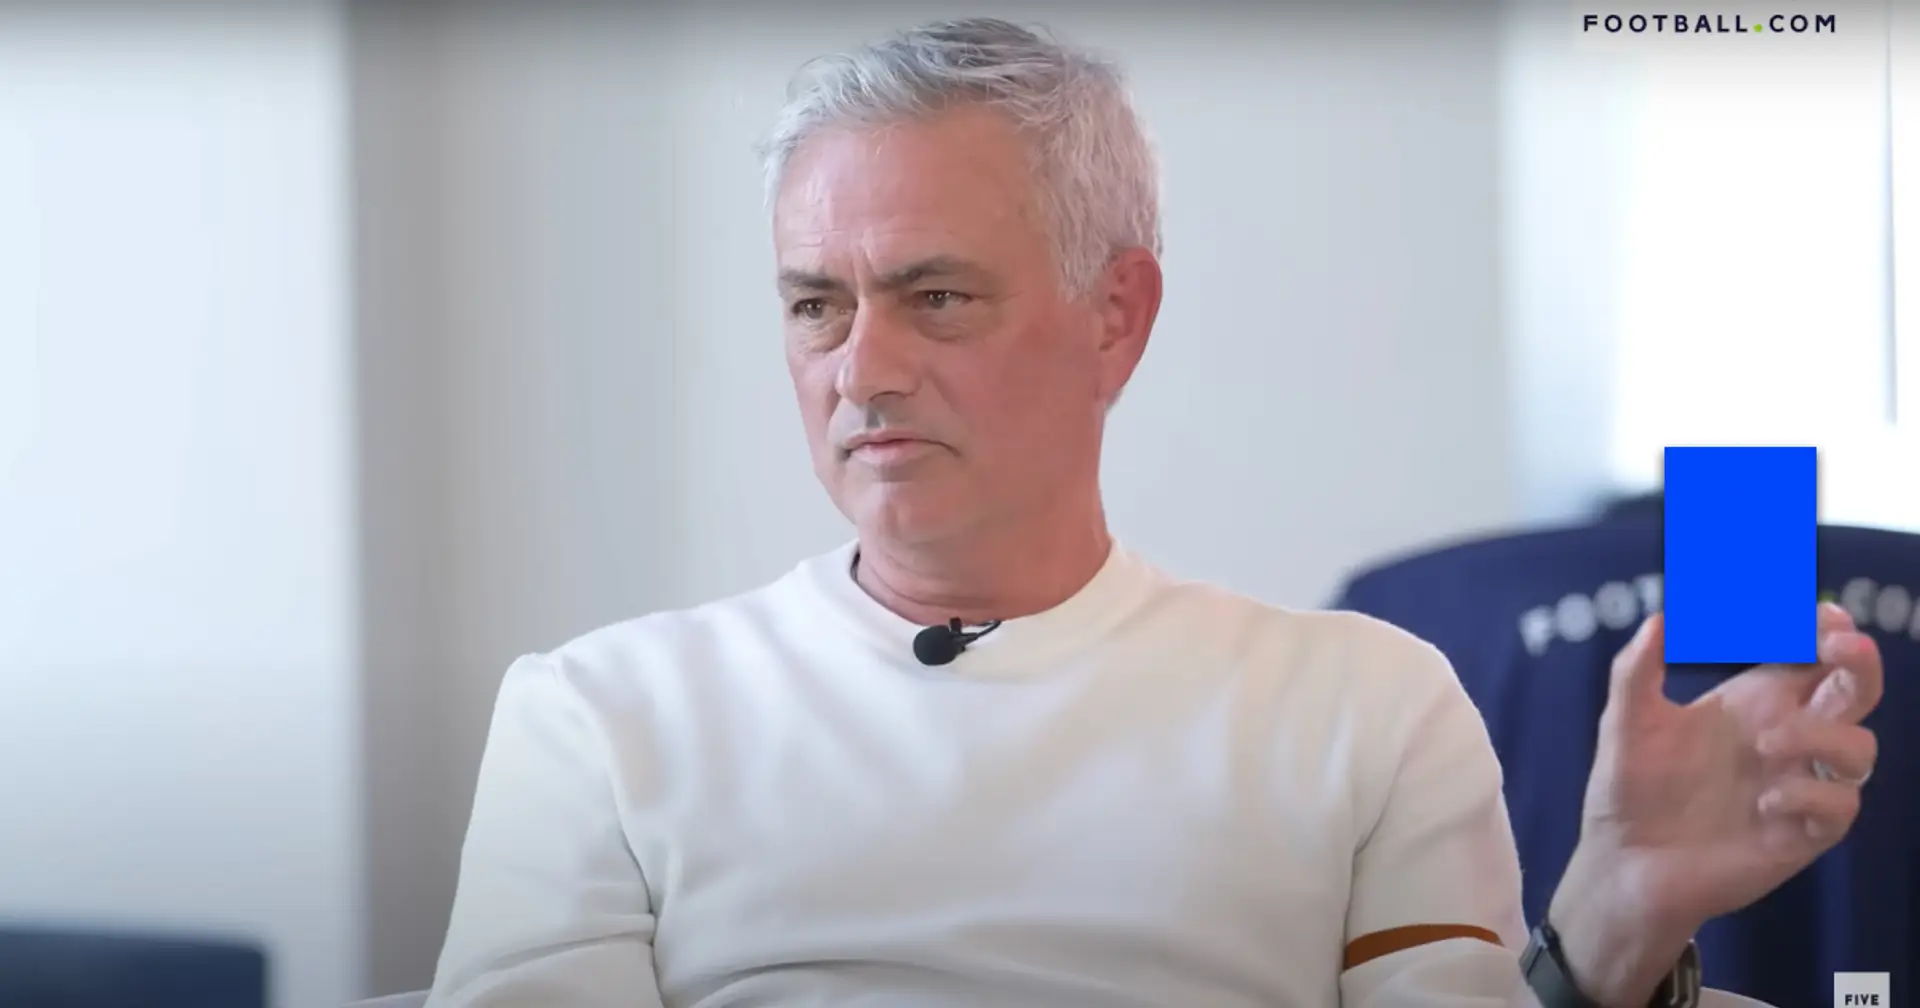 "Probablement plus juste": José Mourinho révèle qu'il est en faveur des cartons bleus